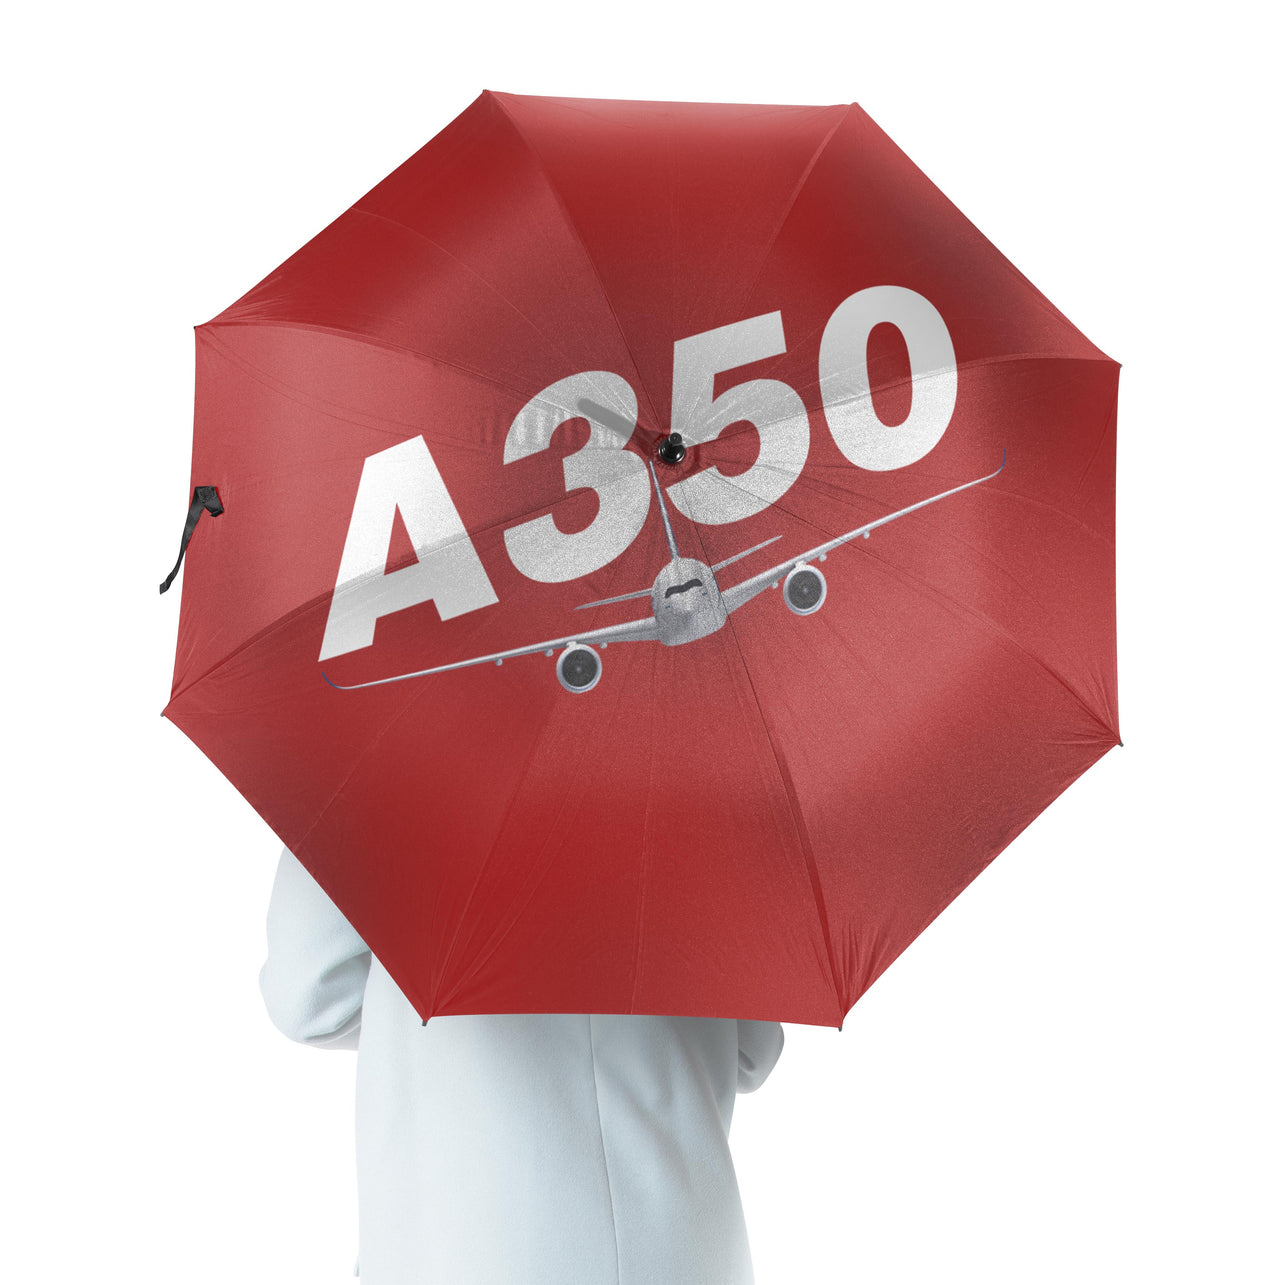 Super Airbus A350 Designed Umbrella